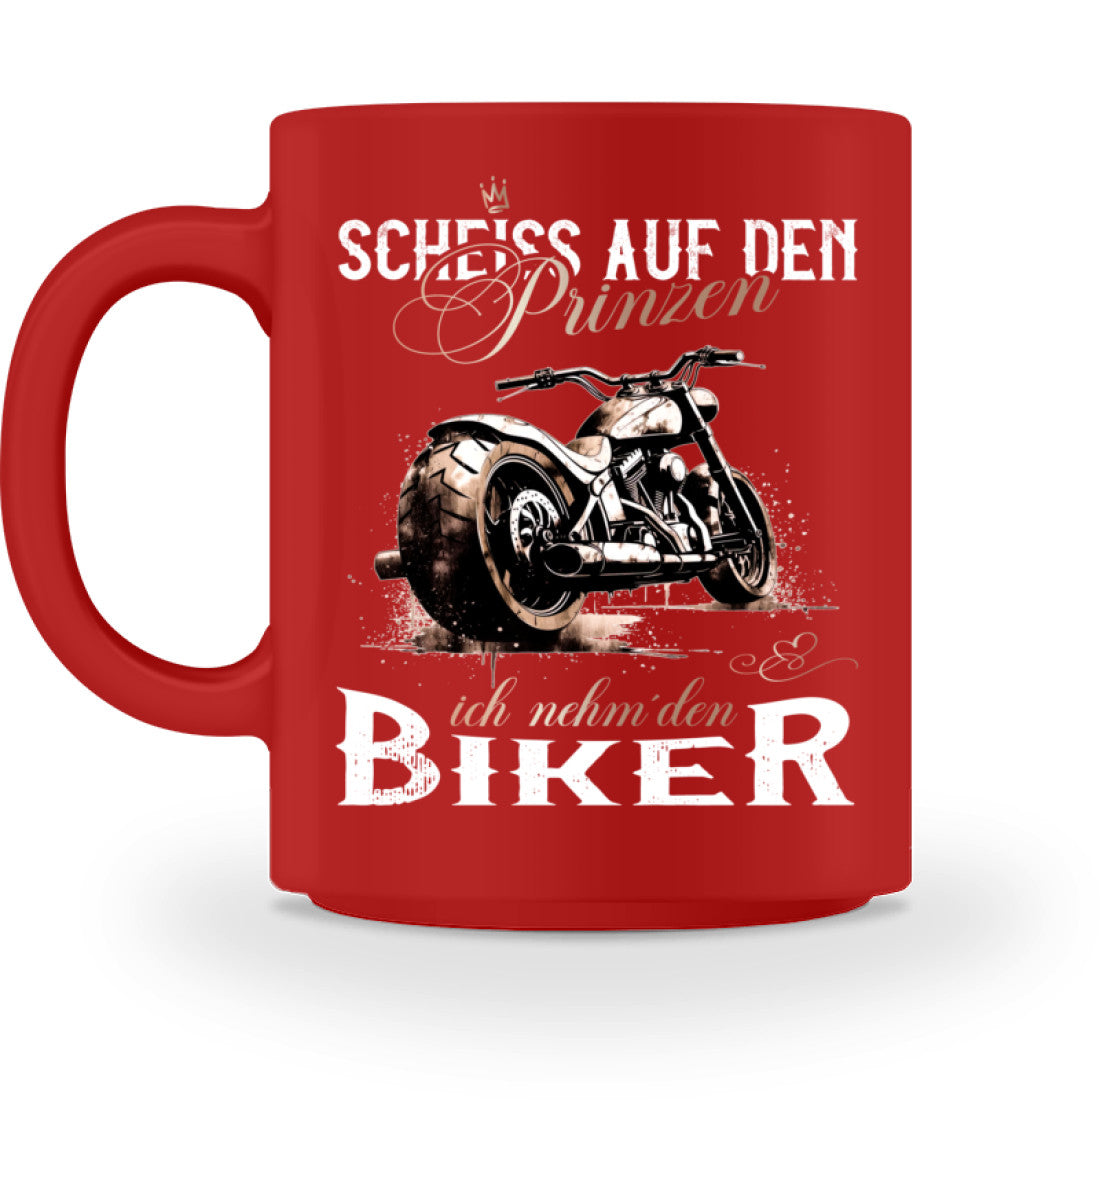 Eine Tasse für Motorradfahrer von Wingbikers, mit dem beidseitigen Aufdruck, Scheiß auf den Prinzen, ich nehm' den Biker, in rot.